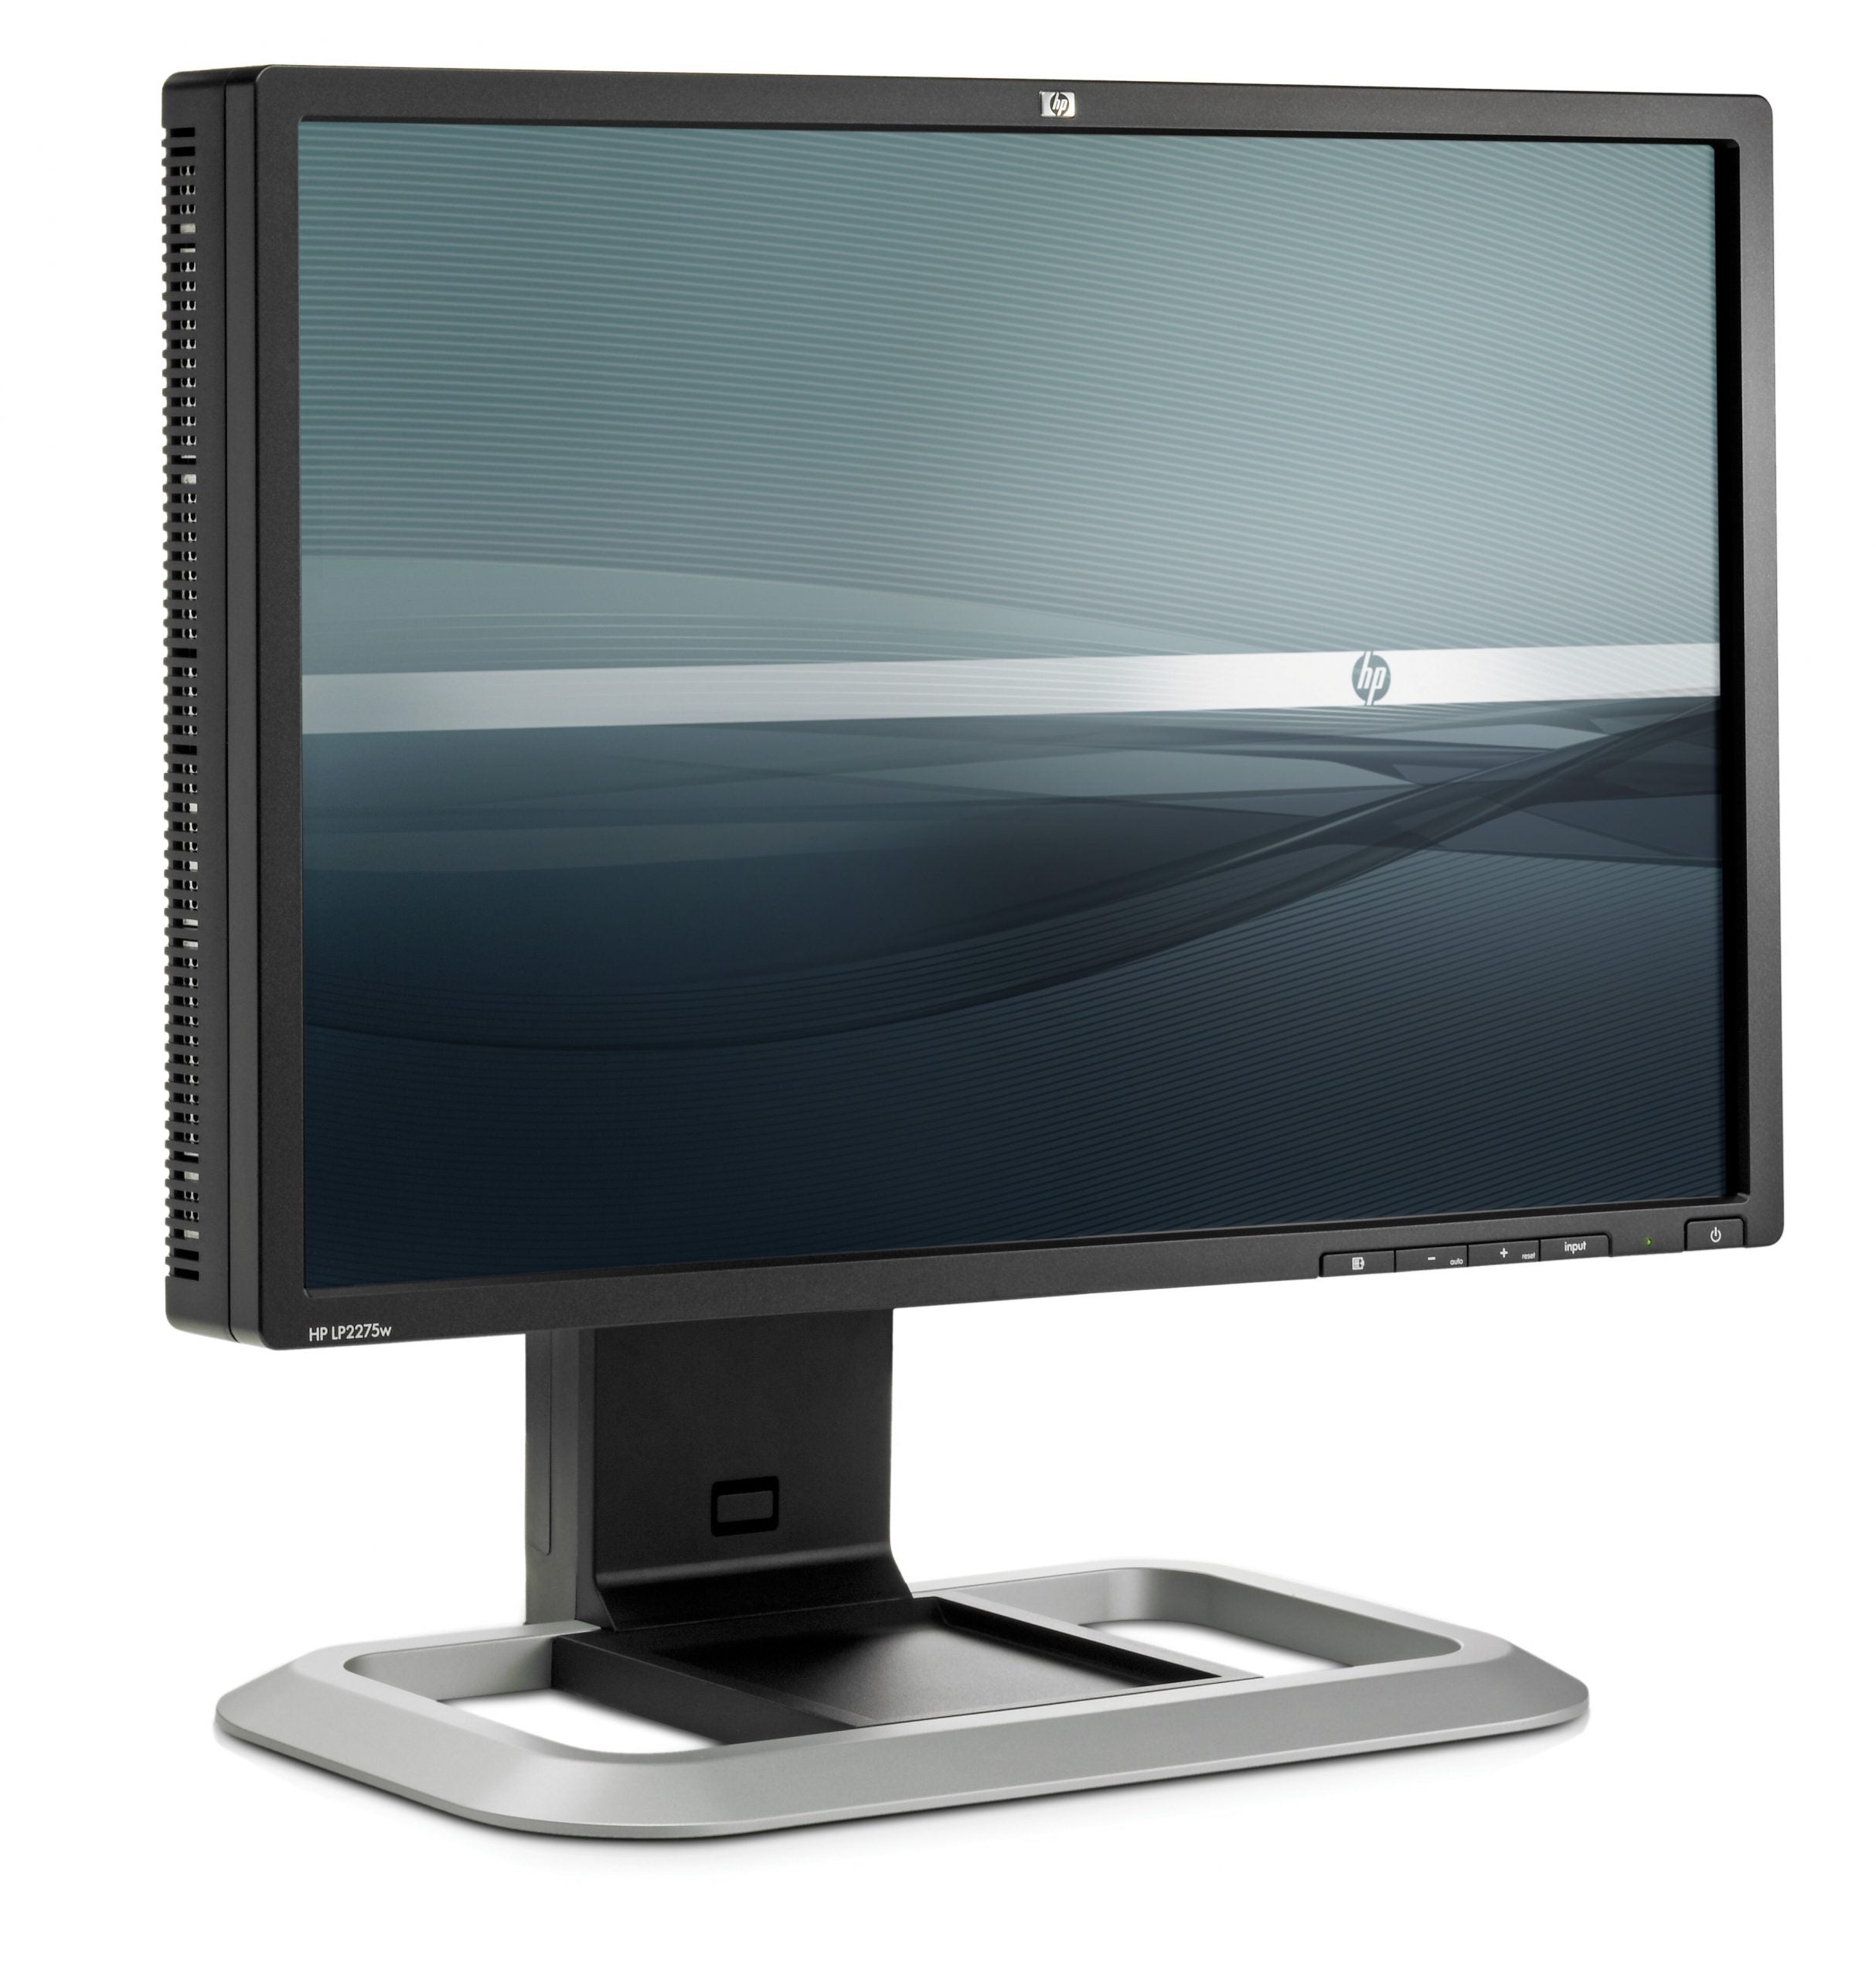 HP LP2275w PVA-LCD-Monitor, 22 Zoll, 1680 x 1050 Pixel, Kontrast 1000:1, Helligkeit 300 cd/m², Reaktionszeit 6 ms, USB, DVI, VGA